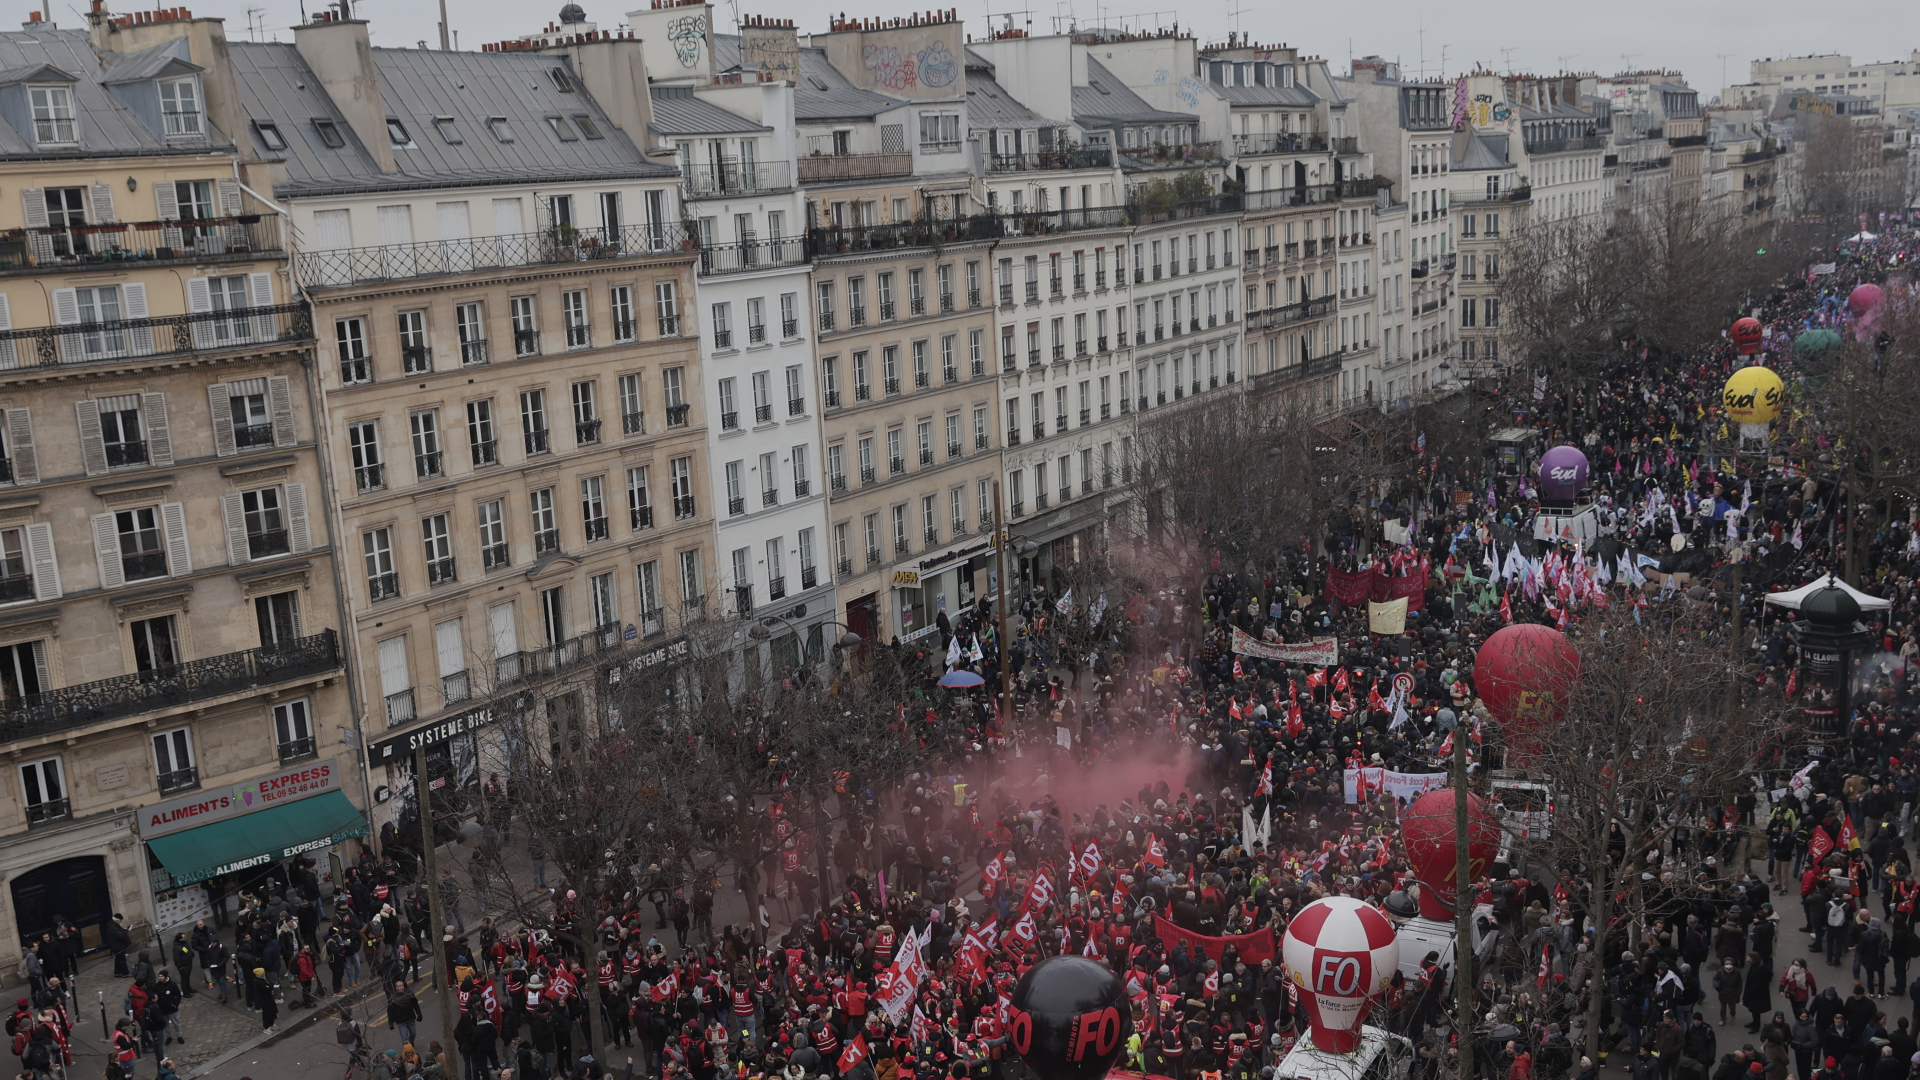 Menschen versammeln sich in der Nähe des Place de la Republique in Paris während einer Demonstration gegen die geplante Rentenreform. | dpa